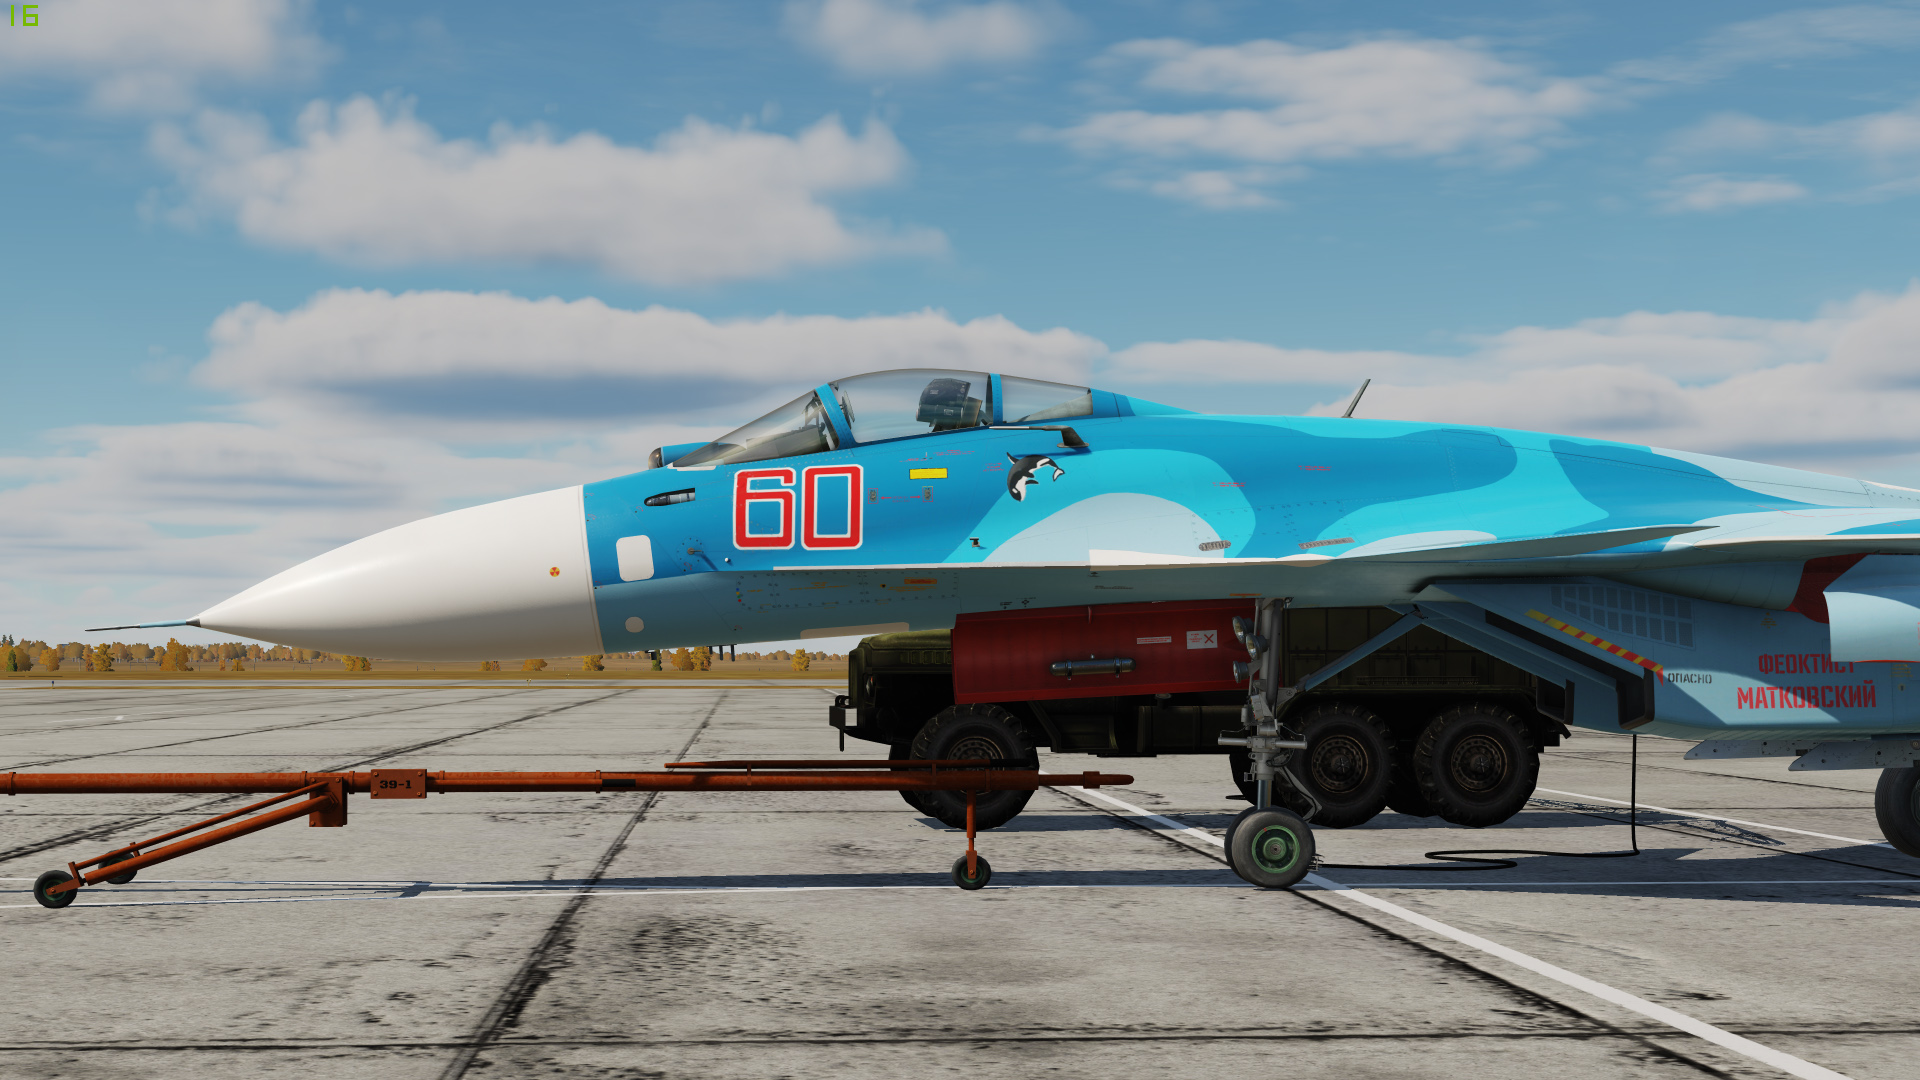 Окраска Су-33 "Феоктист Матковский" (RF-33705 60_красный) - Livery of Su-33 "Feoktist Matkovsky" (RF-33705 60_red)